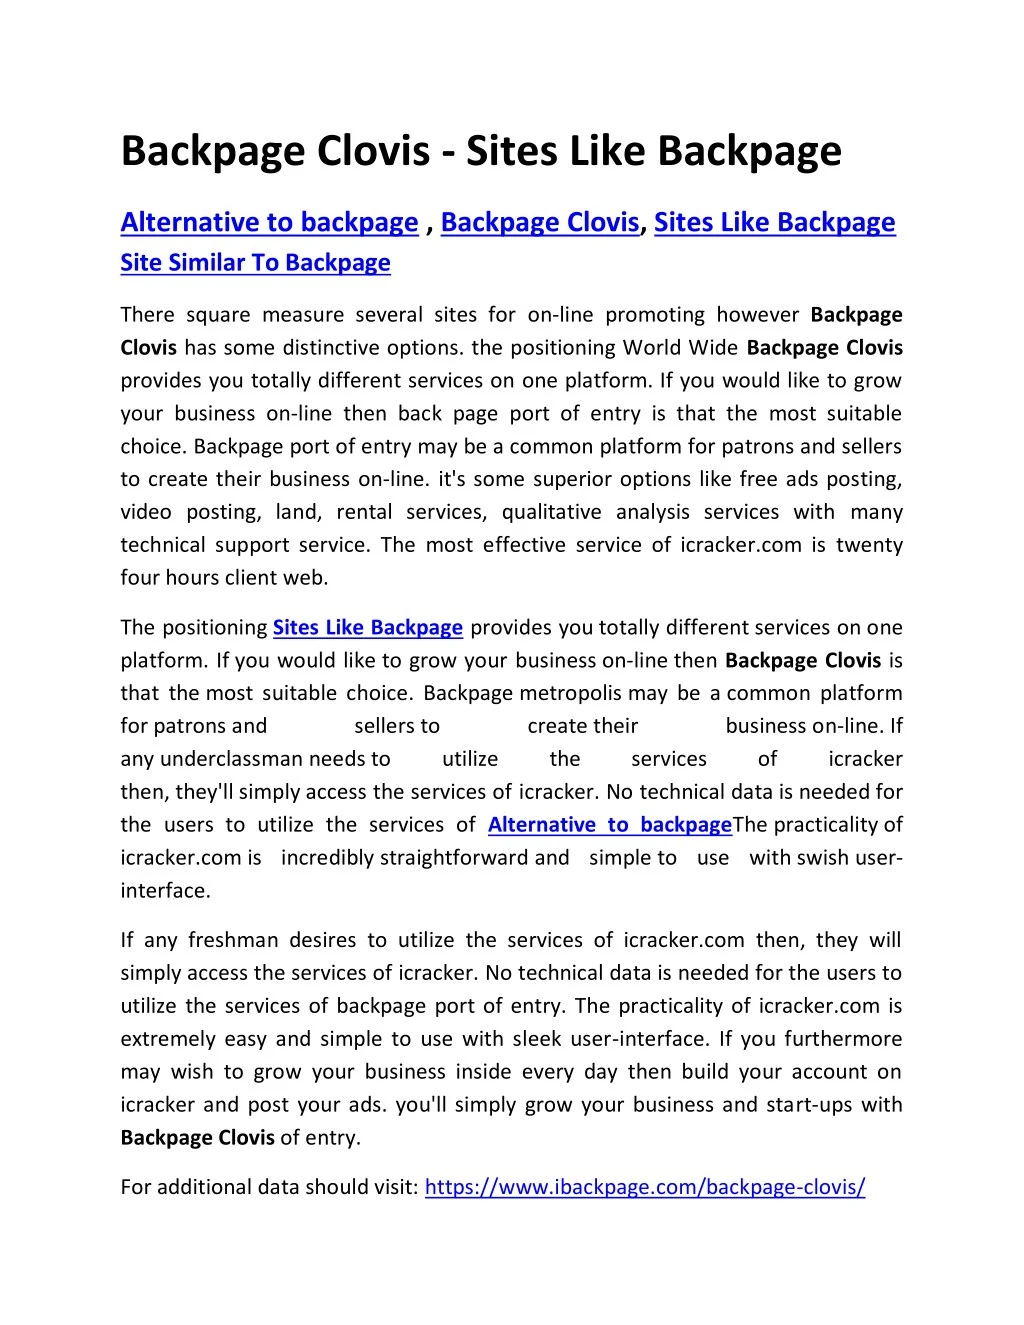 backpage clovis sites like backpage